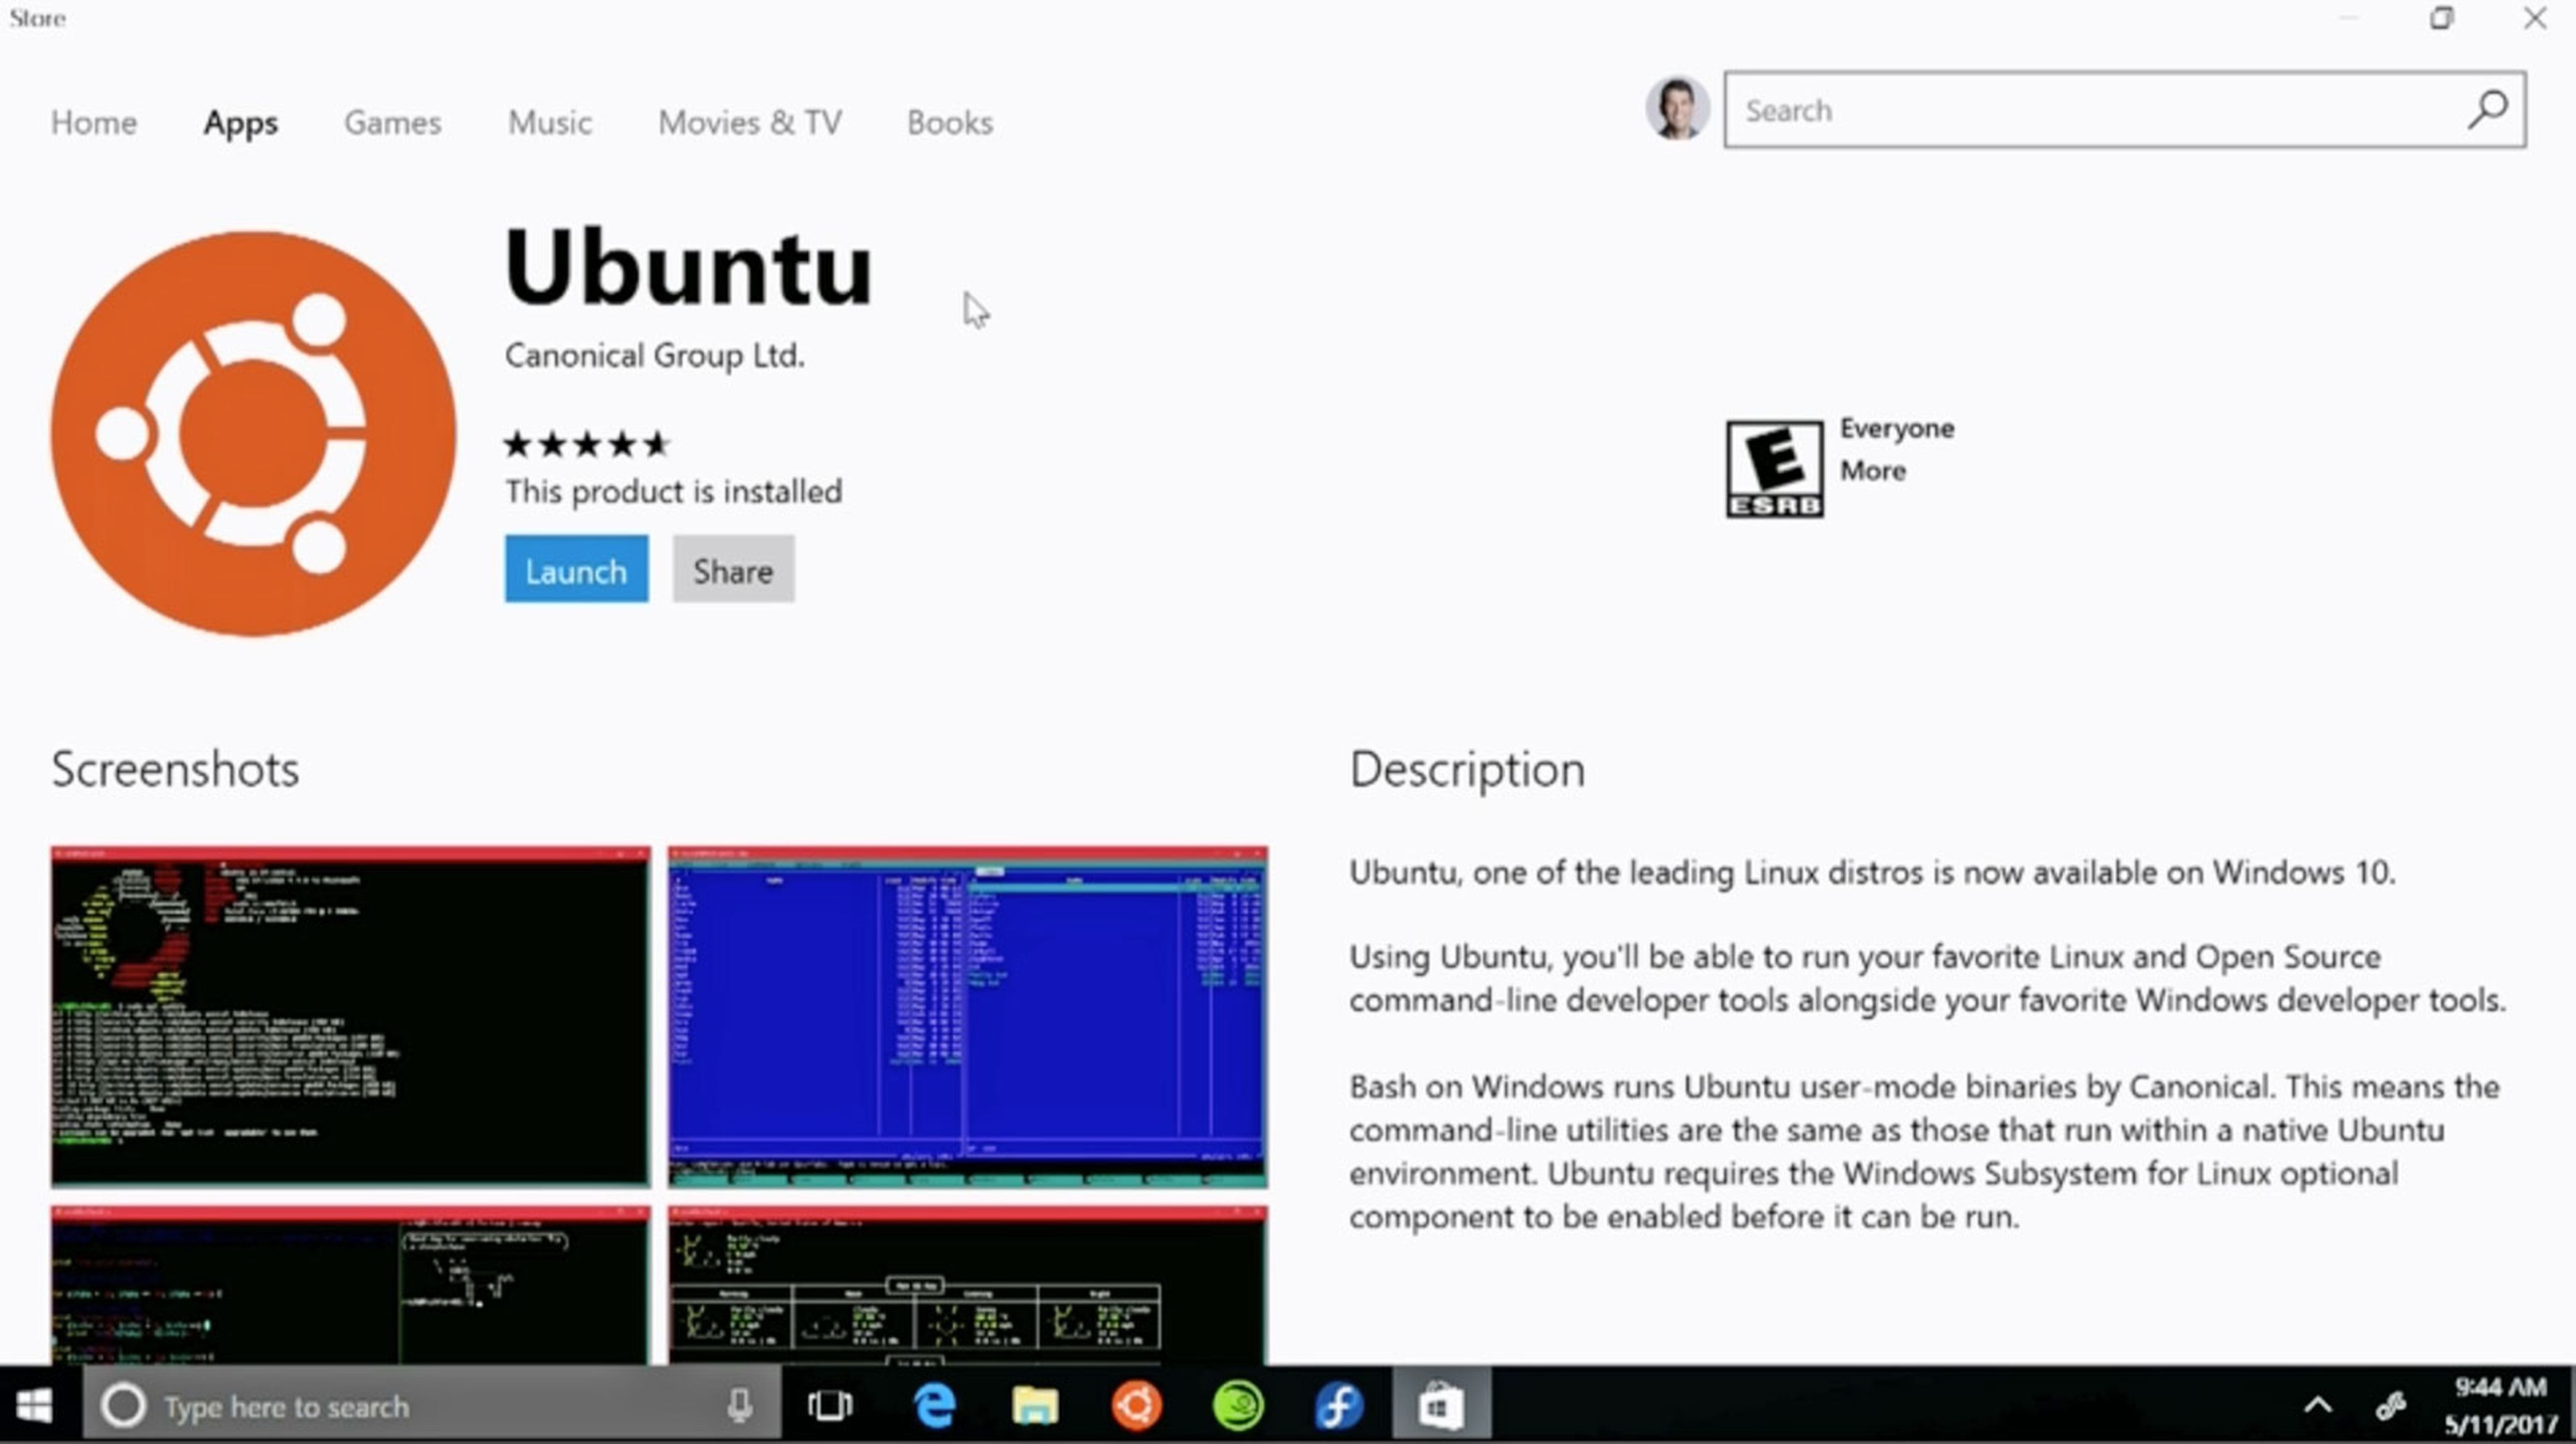 ¿Qué objetivo tiene Microsoft integrando Linux y Windows?